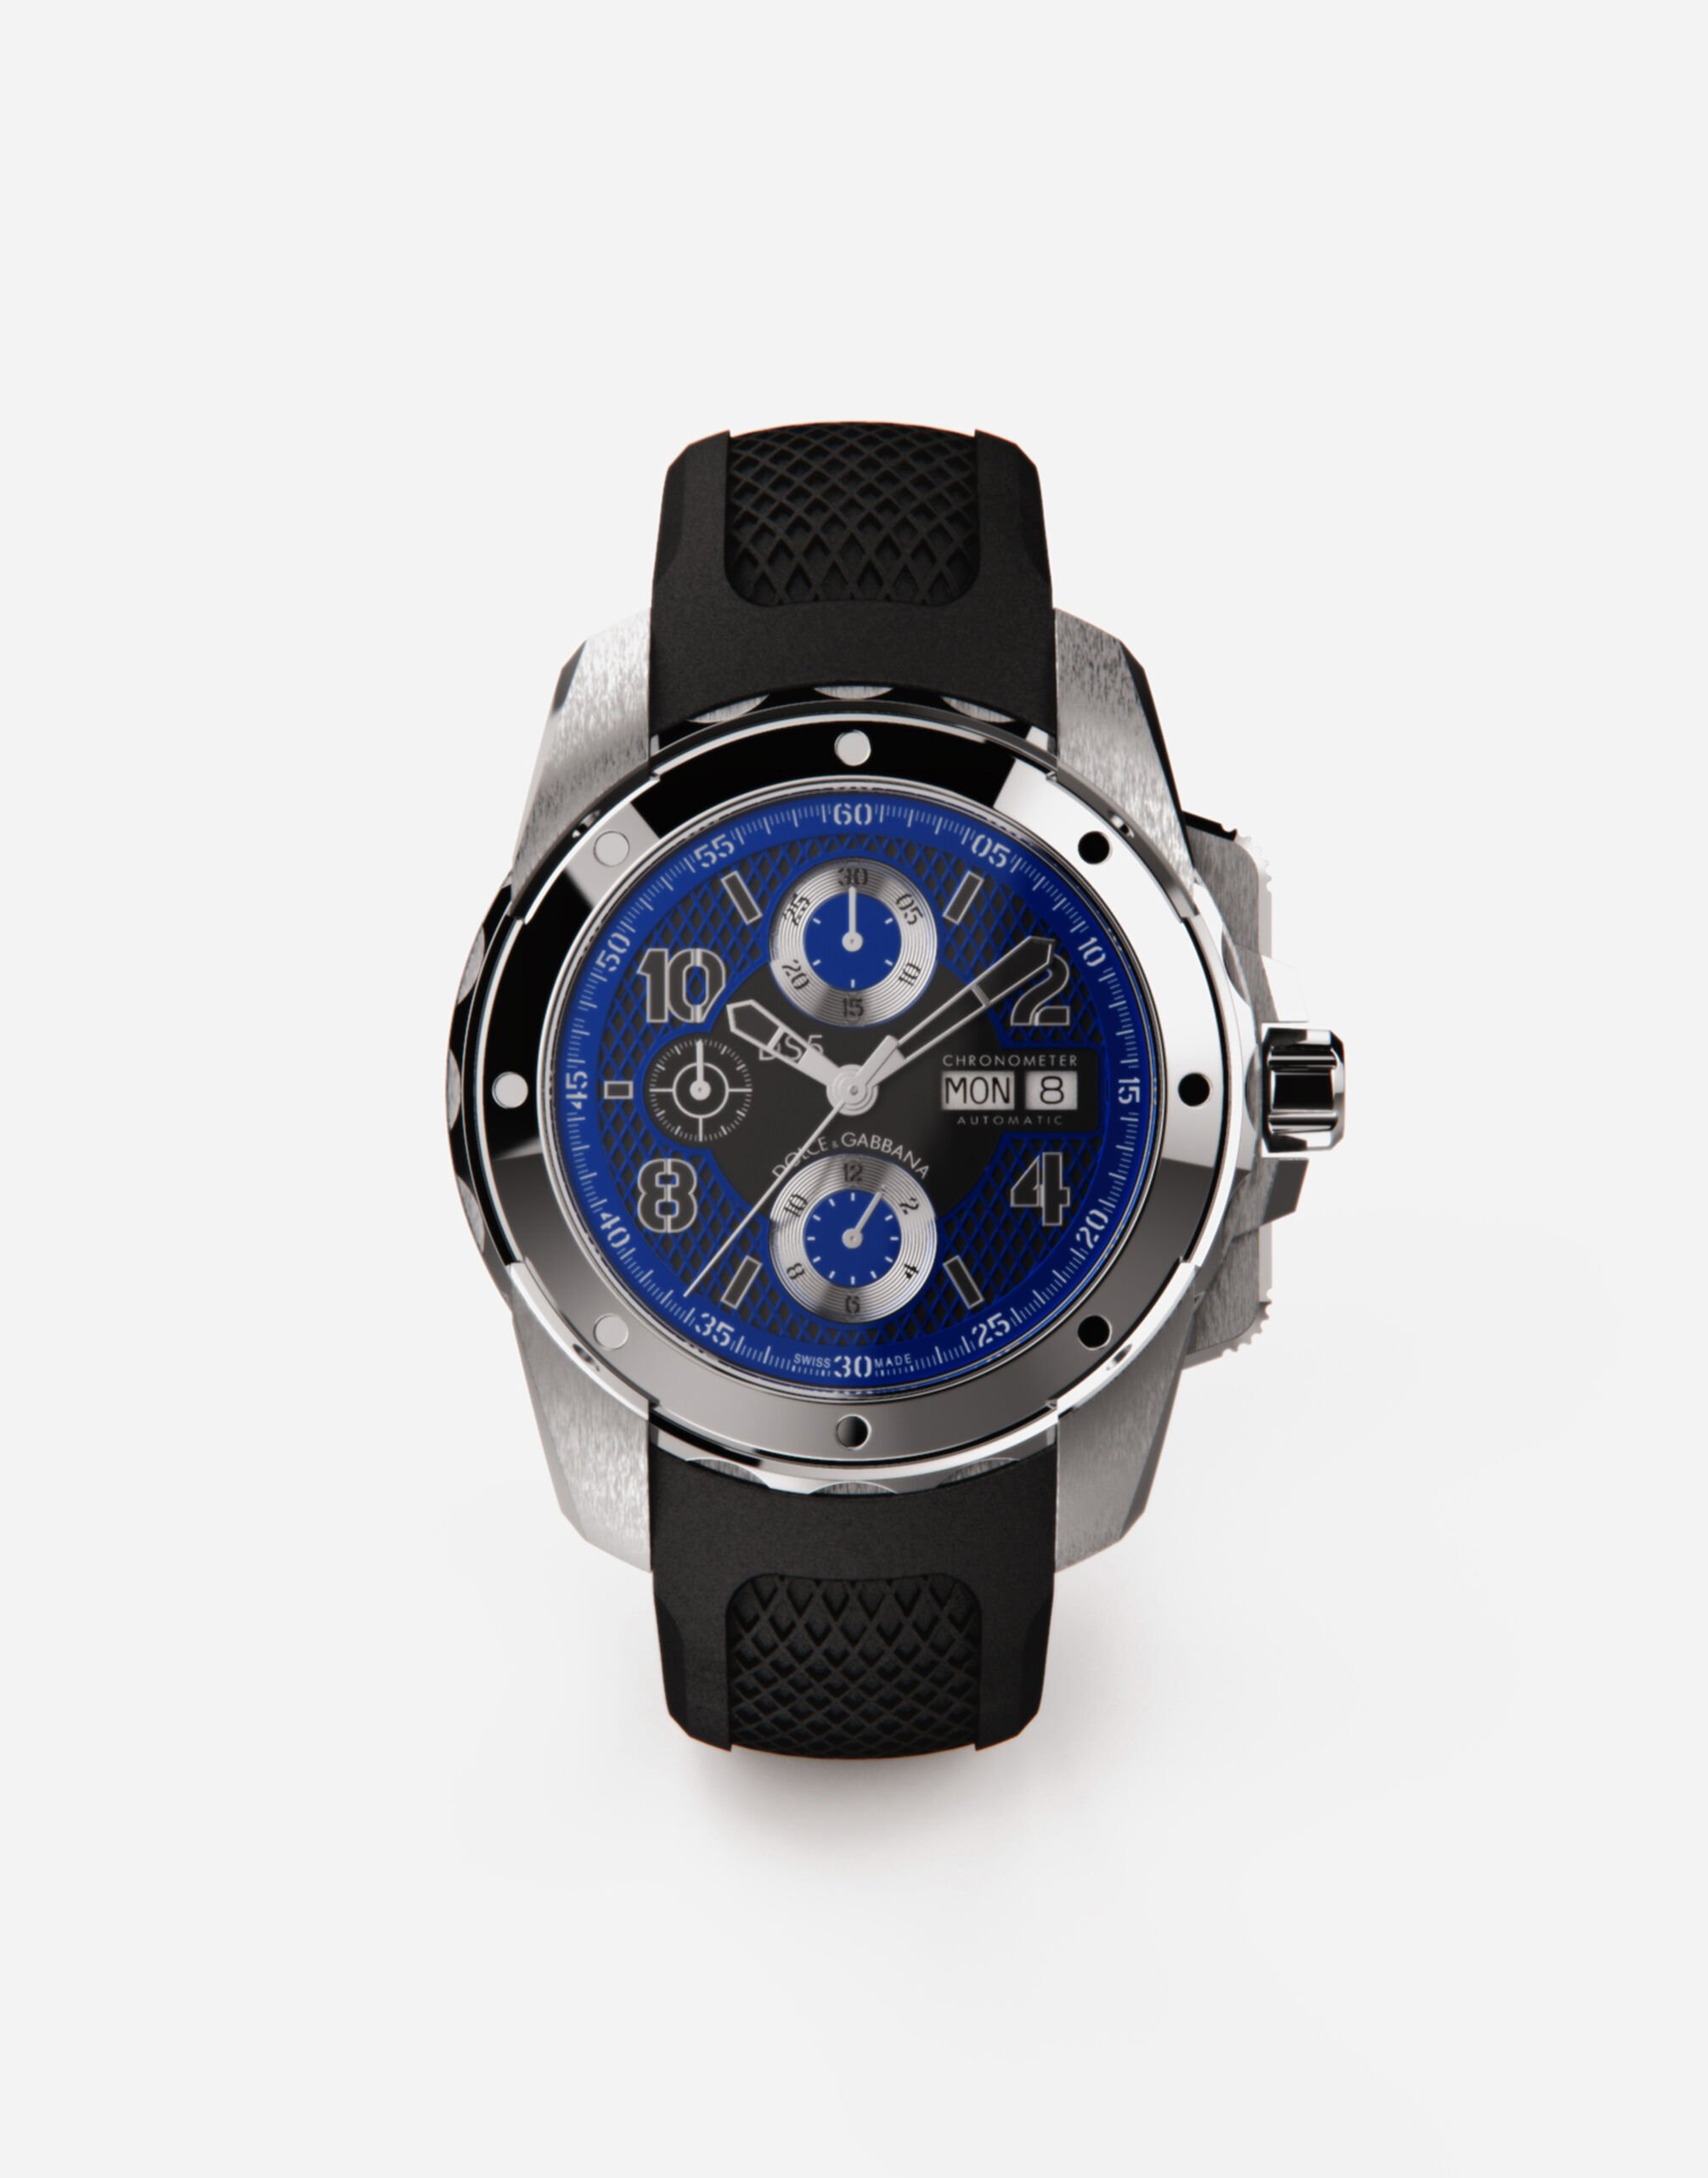 Dolce & Gabbana DS5 watch in steel Bordeaux WWEEGGWW045